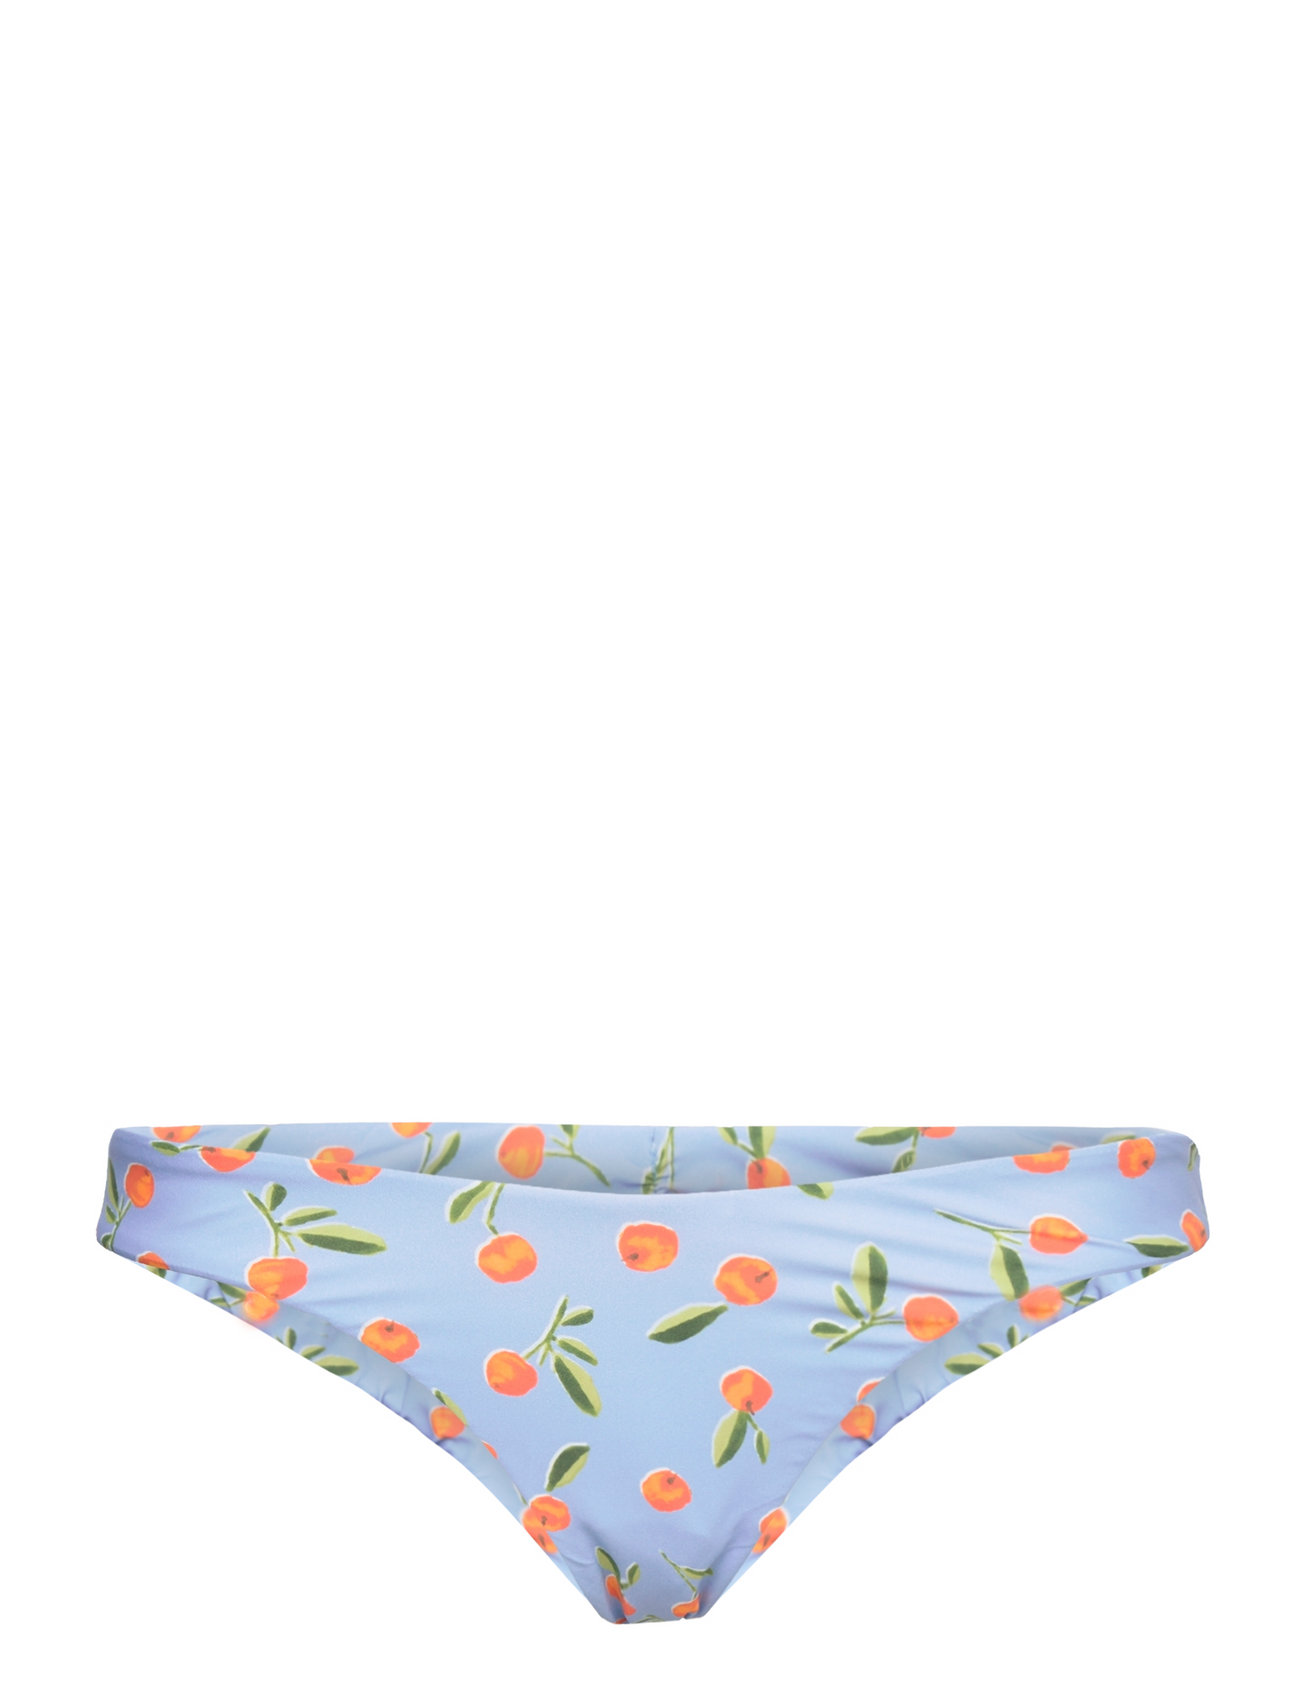 Summer Crush Reversible High Cut Rio Pant Swimwear Bikinis Bikini Bottoms Bikini Briefs Blue Seafolly